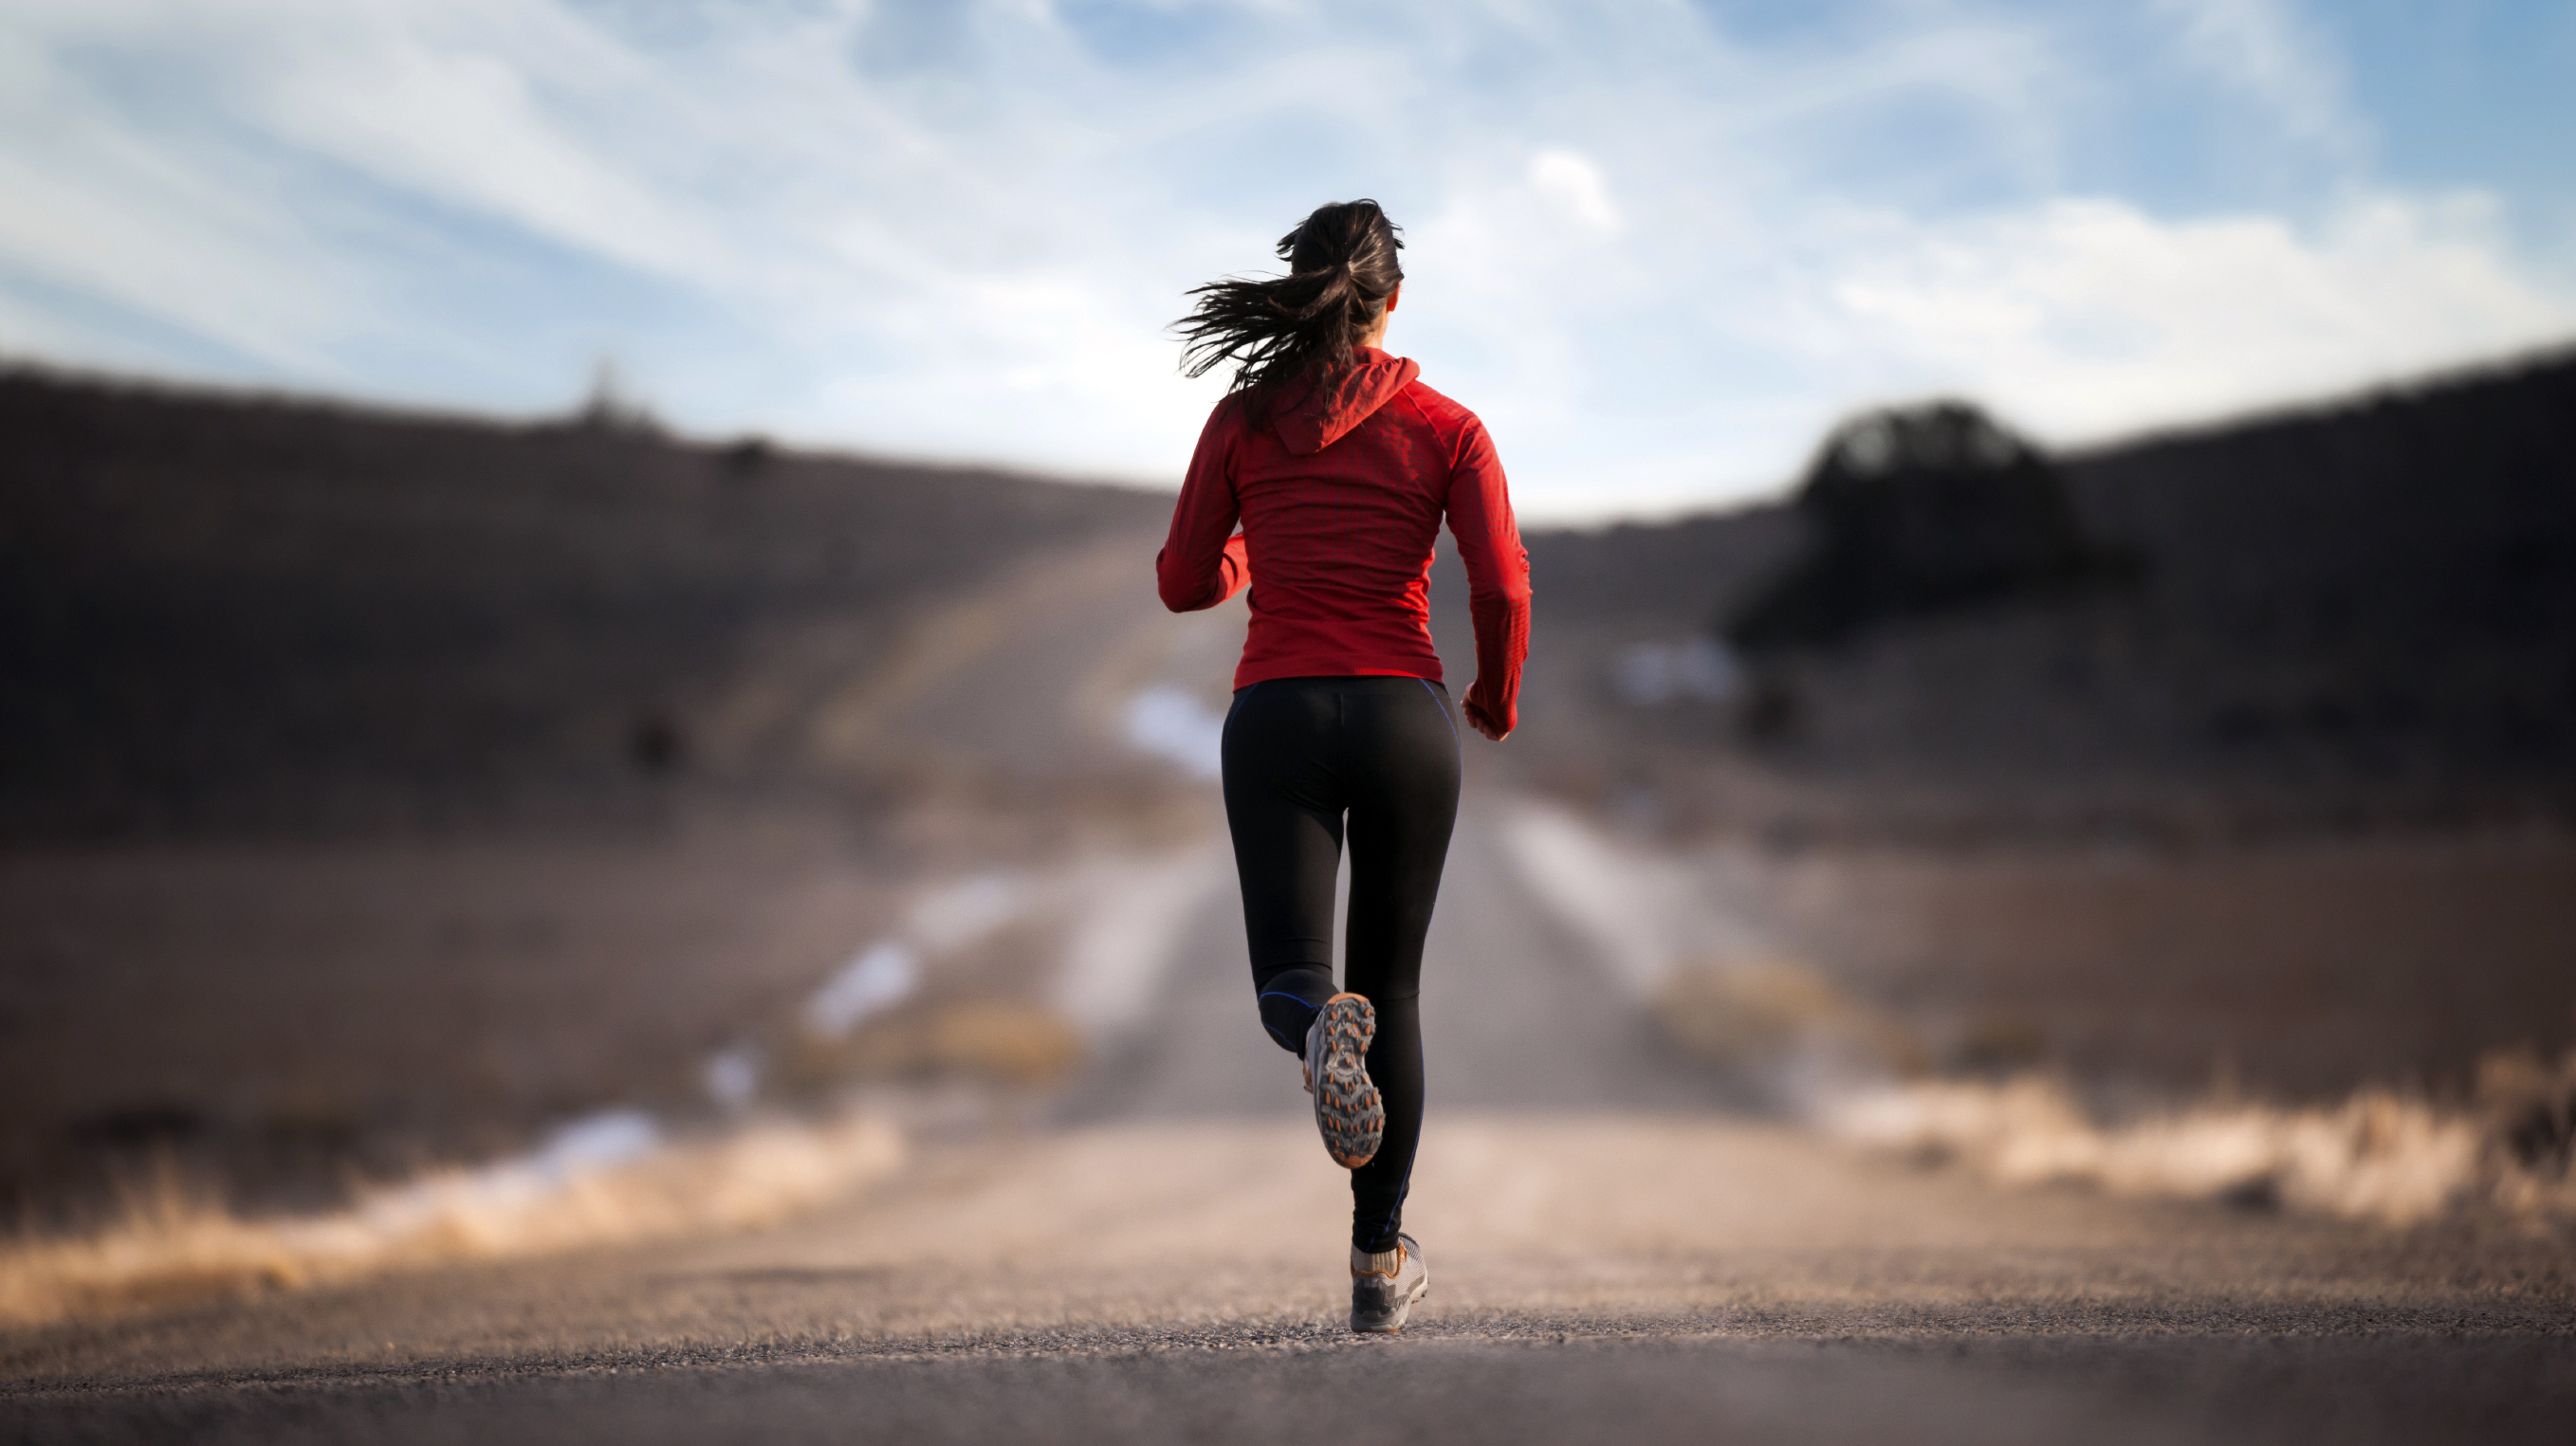 18 летняя спортсменка после пробежки расслабляет себя вводя в киску фаллос